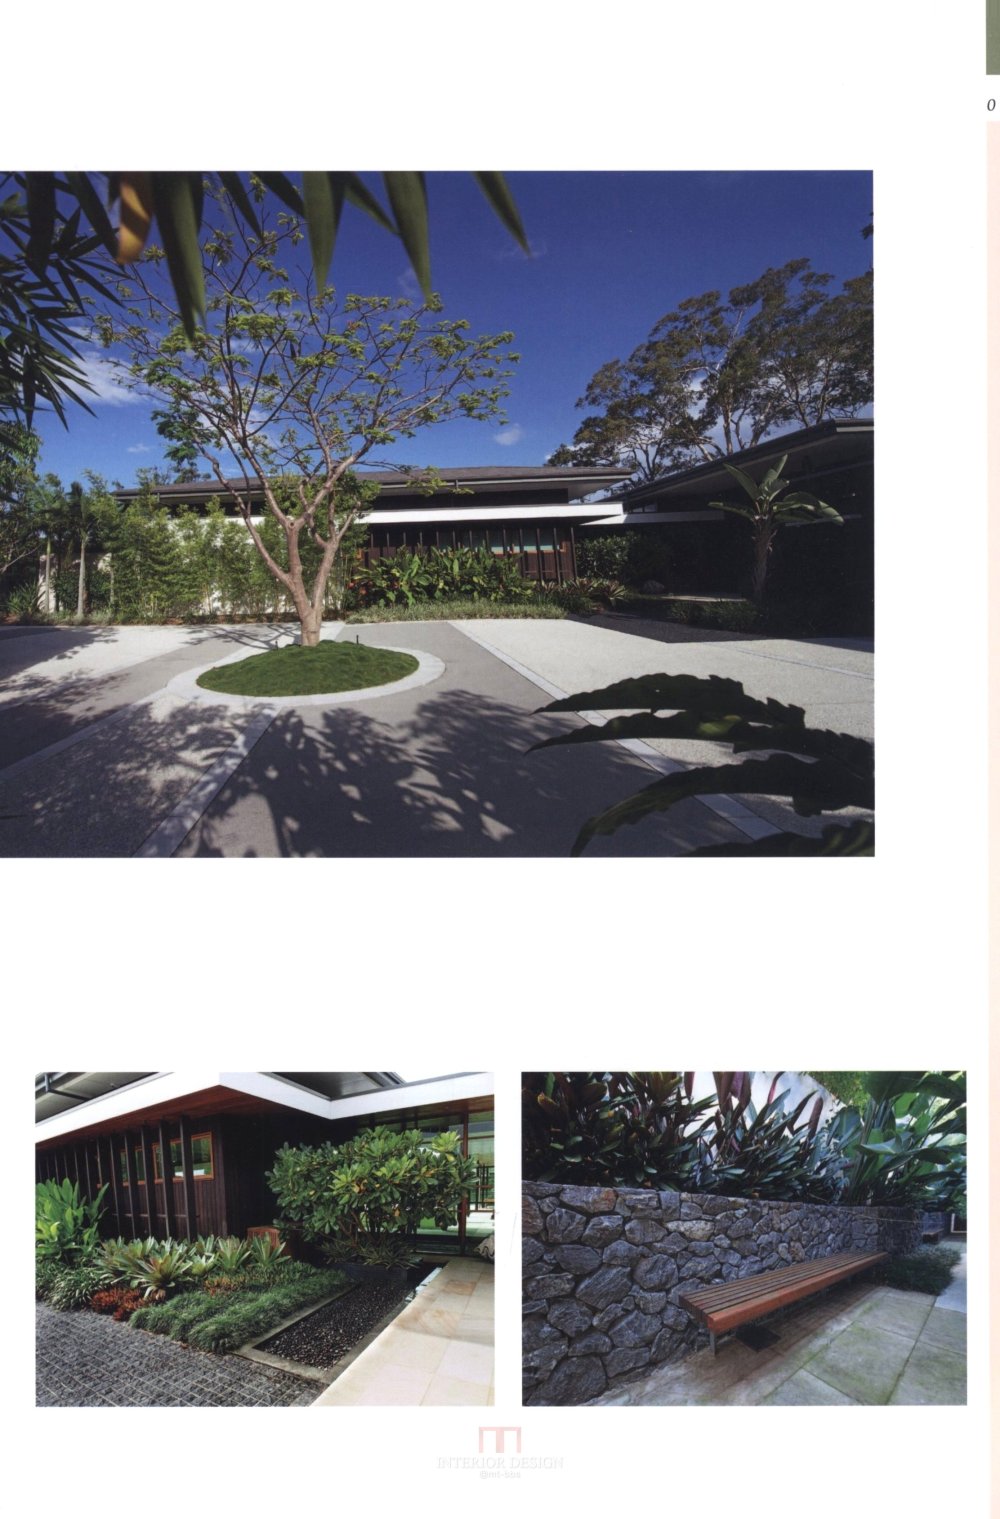 别墅庭园规划与设计Villa Garden Plan & Design_155.jpg